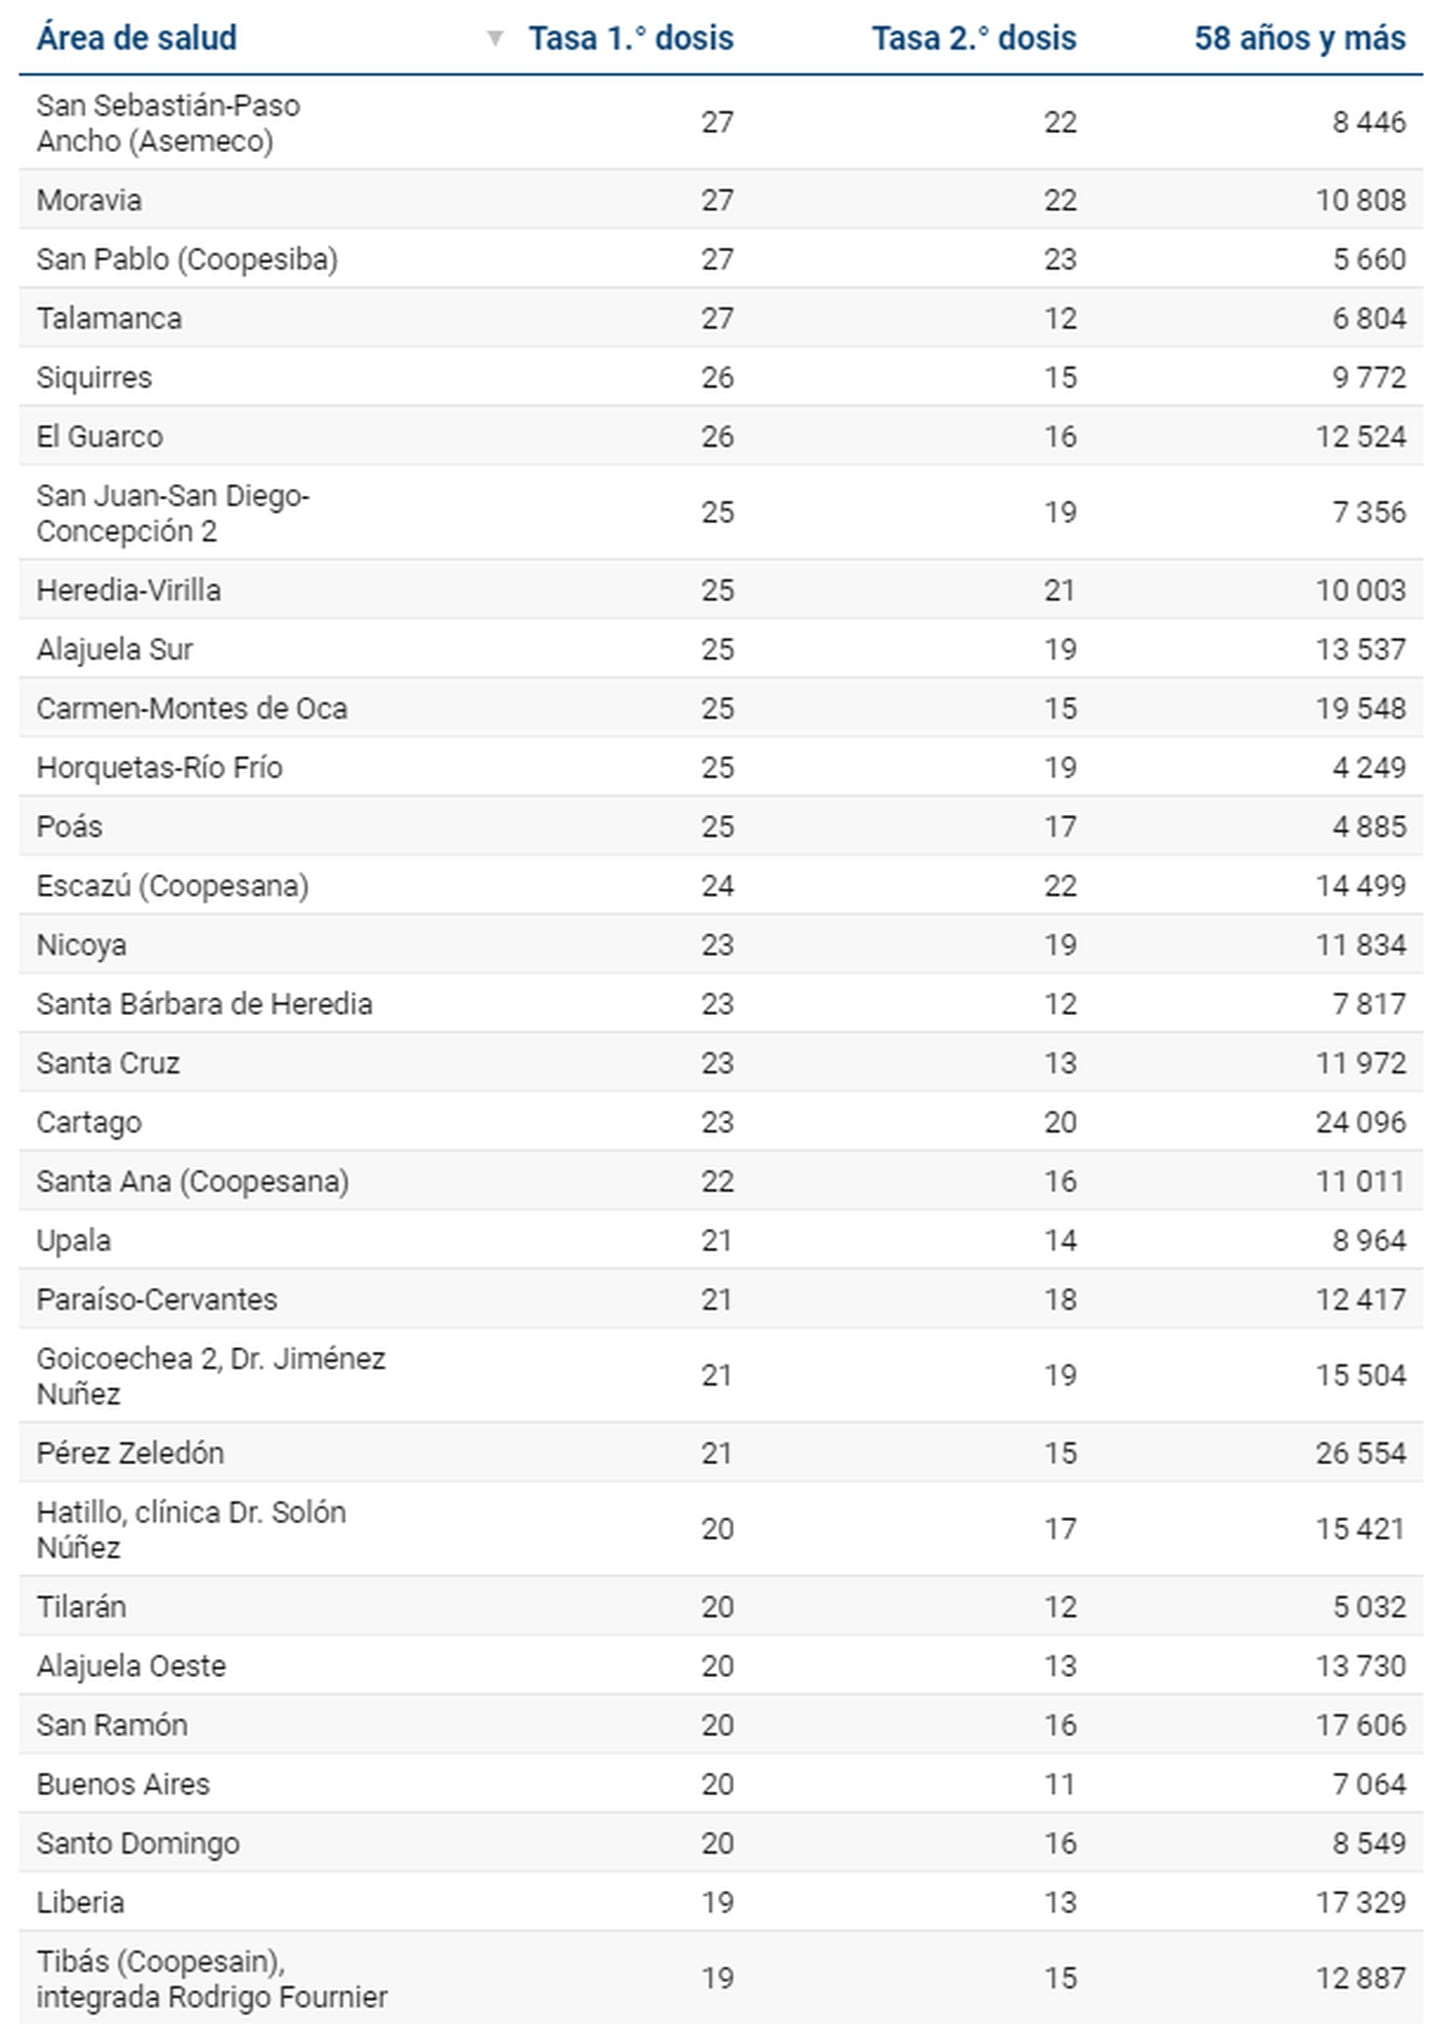 Gráfico de la tasa de vacunación por área de salud de Costa Rica.